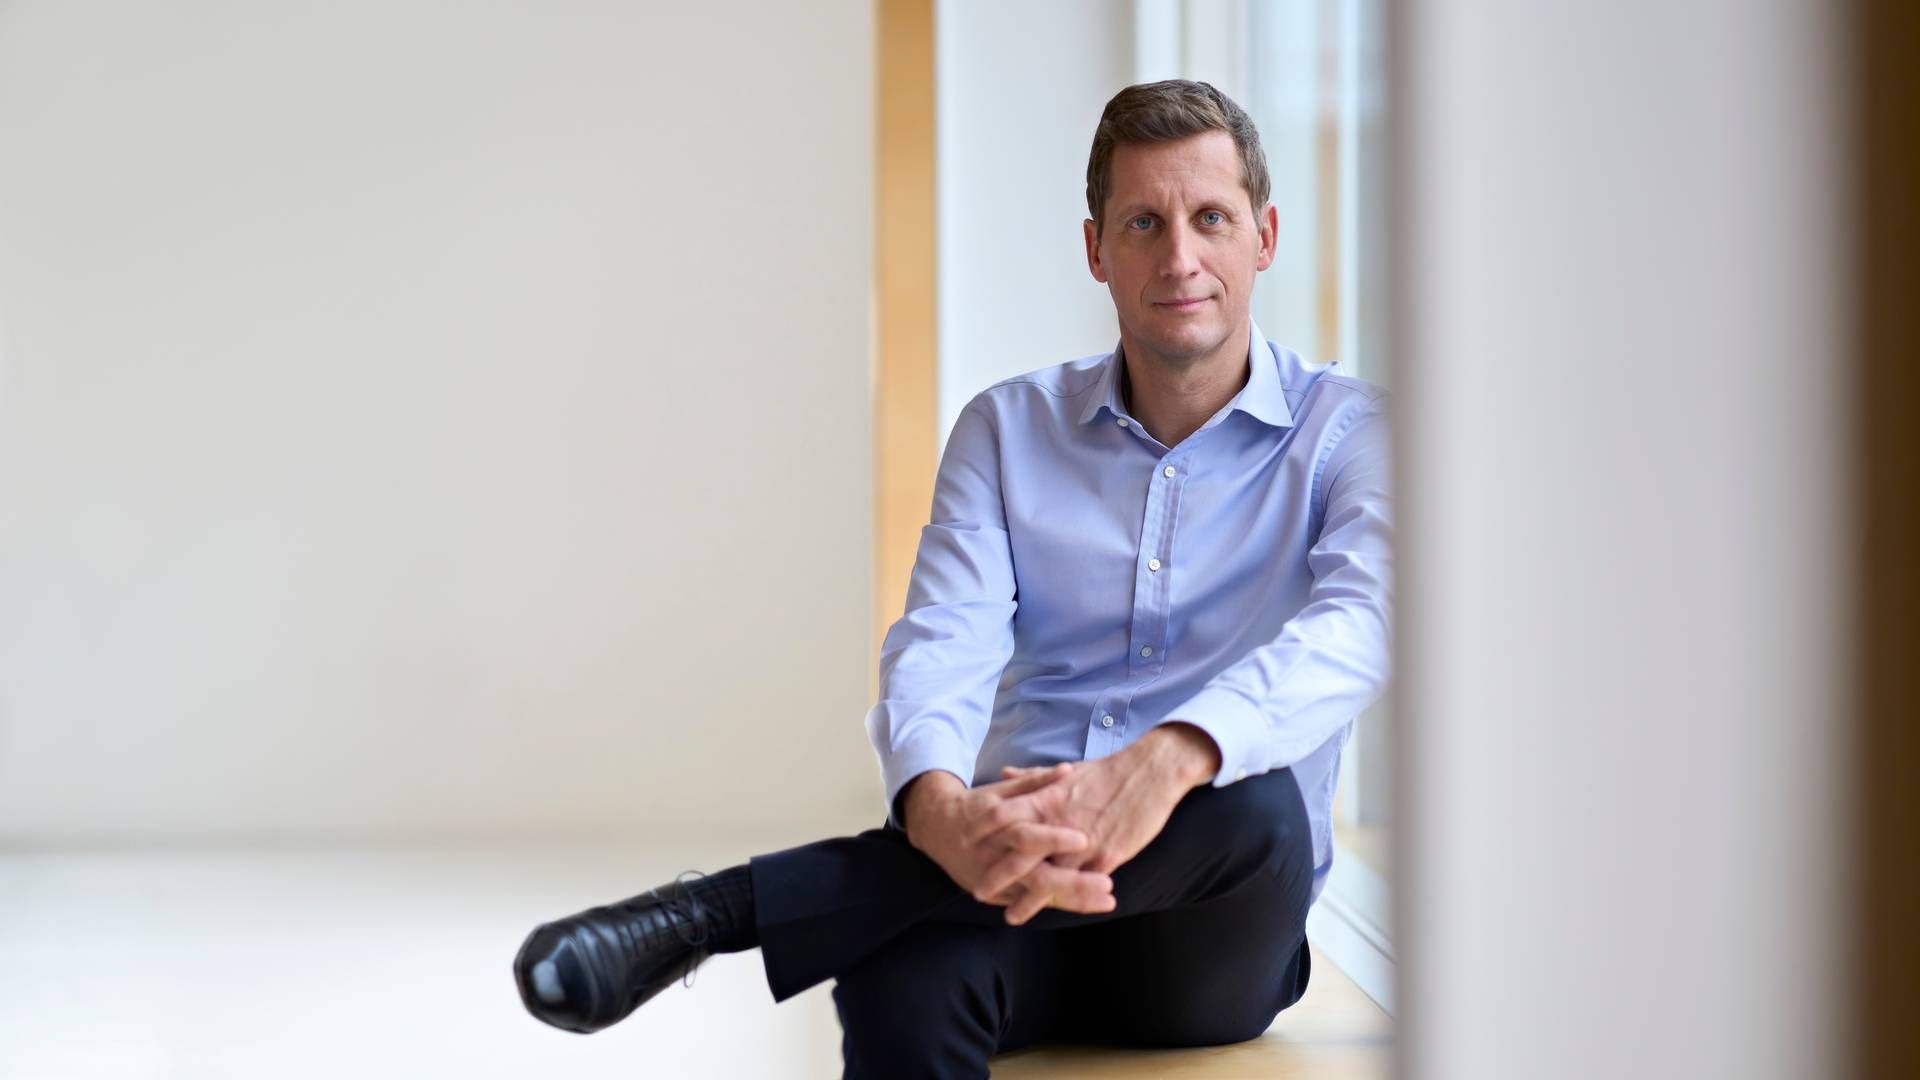 Christophe Bourdon har siden 2022 stået i spidsen for Leo Pharma som adm. direktør. Han kom til dermatologiselskabet fra det danske biotekselskab Orphazyme. | Foto: Leo Pharma/pr